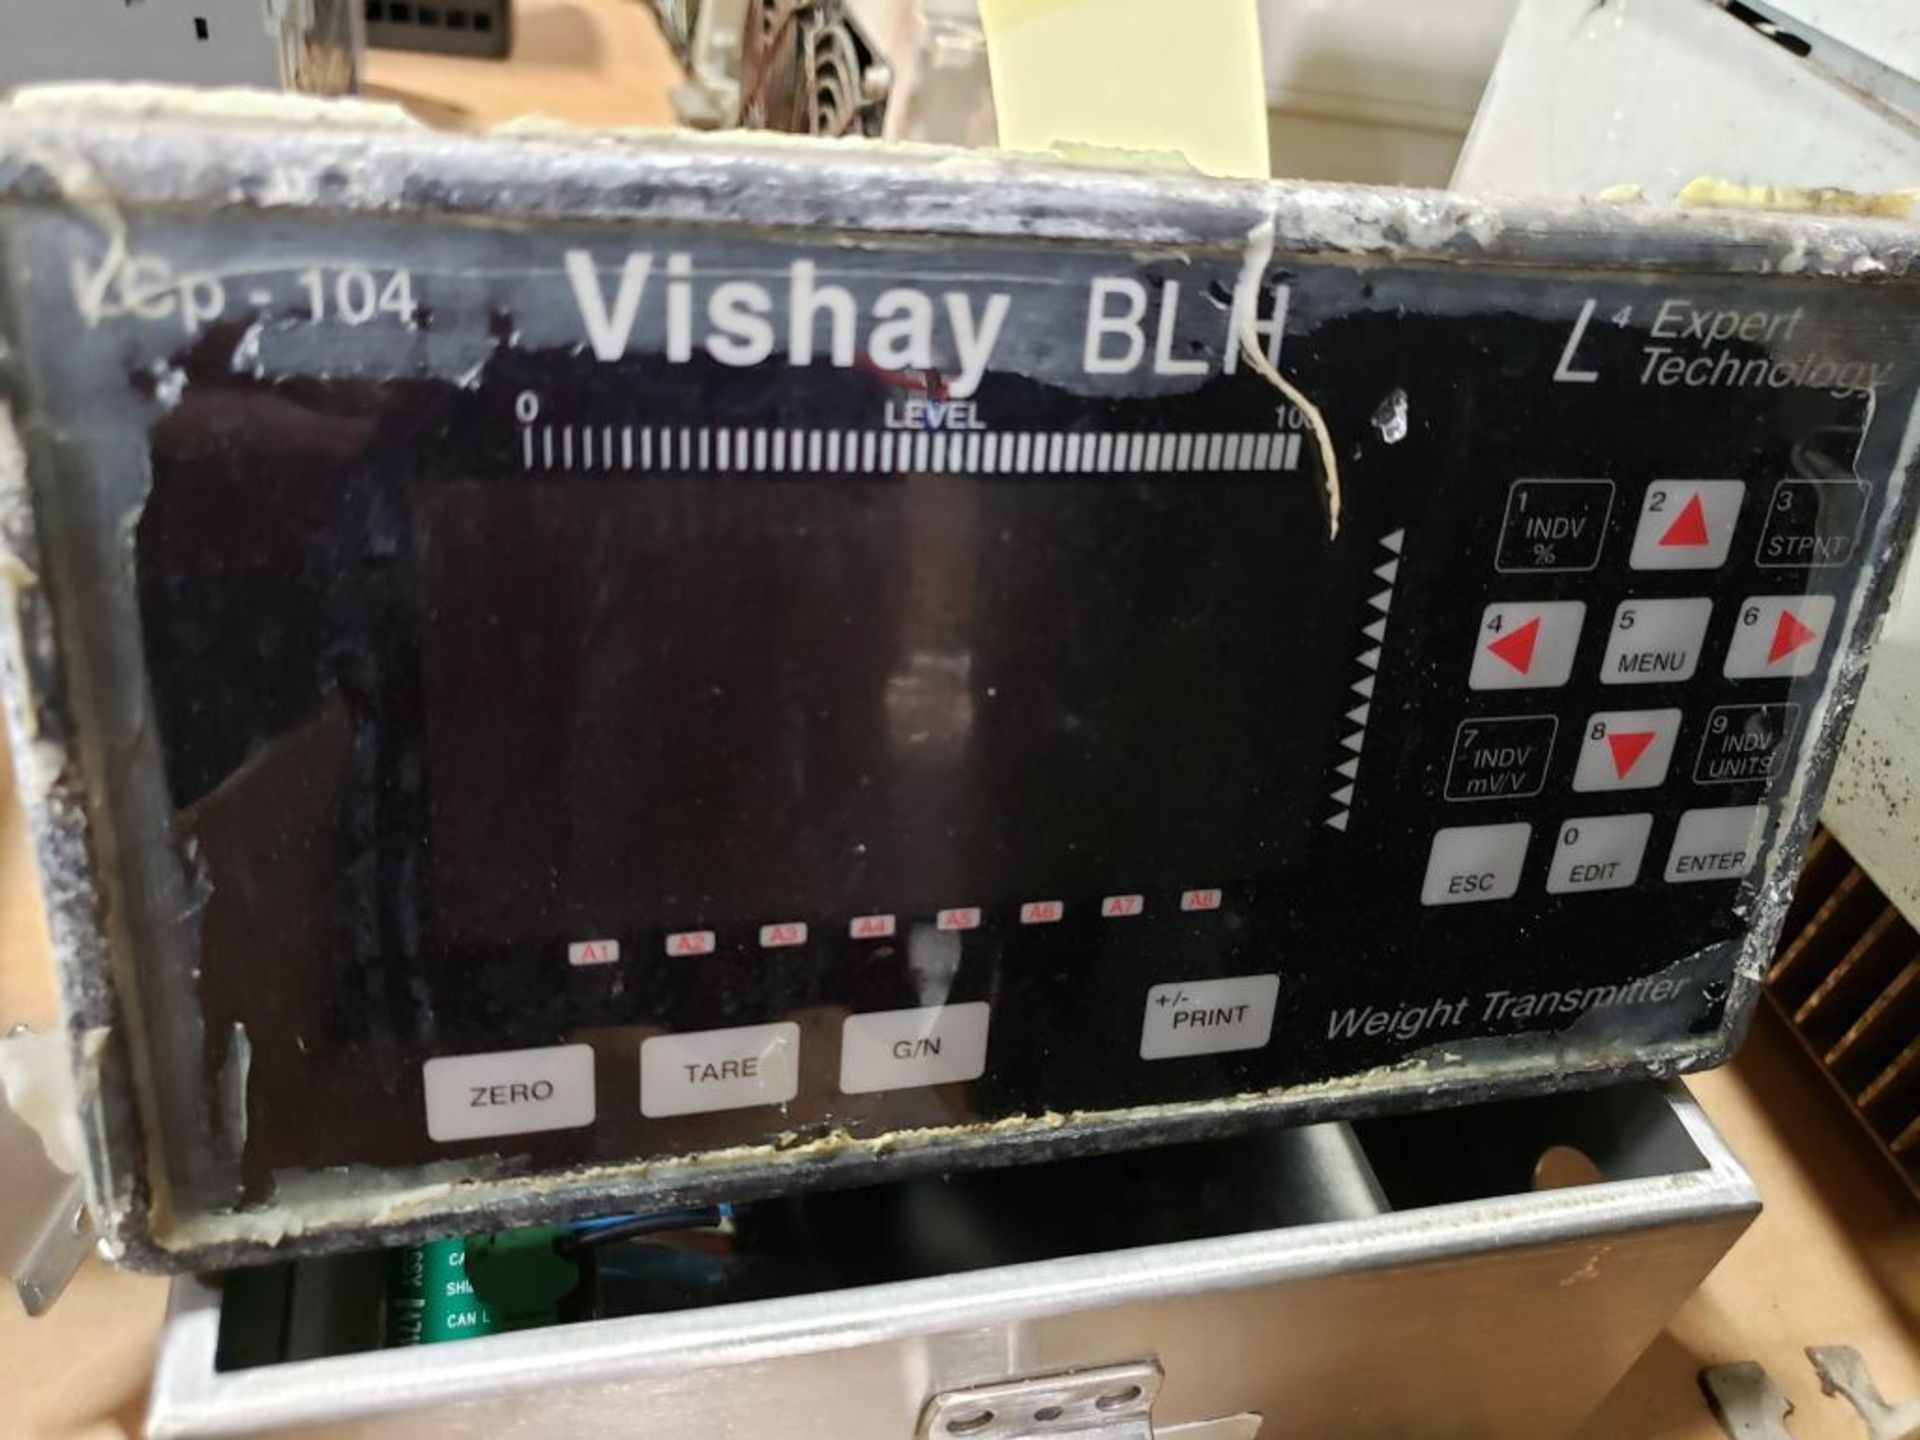 Expert Technology Vishay BLH. LCp-104. - Image 2 of 5